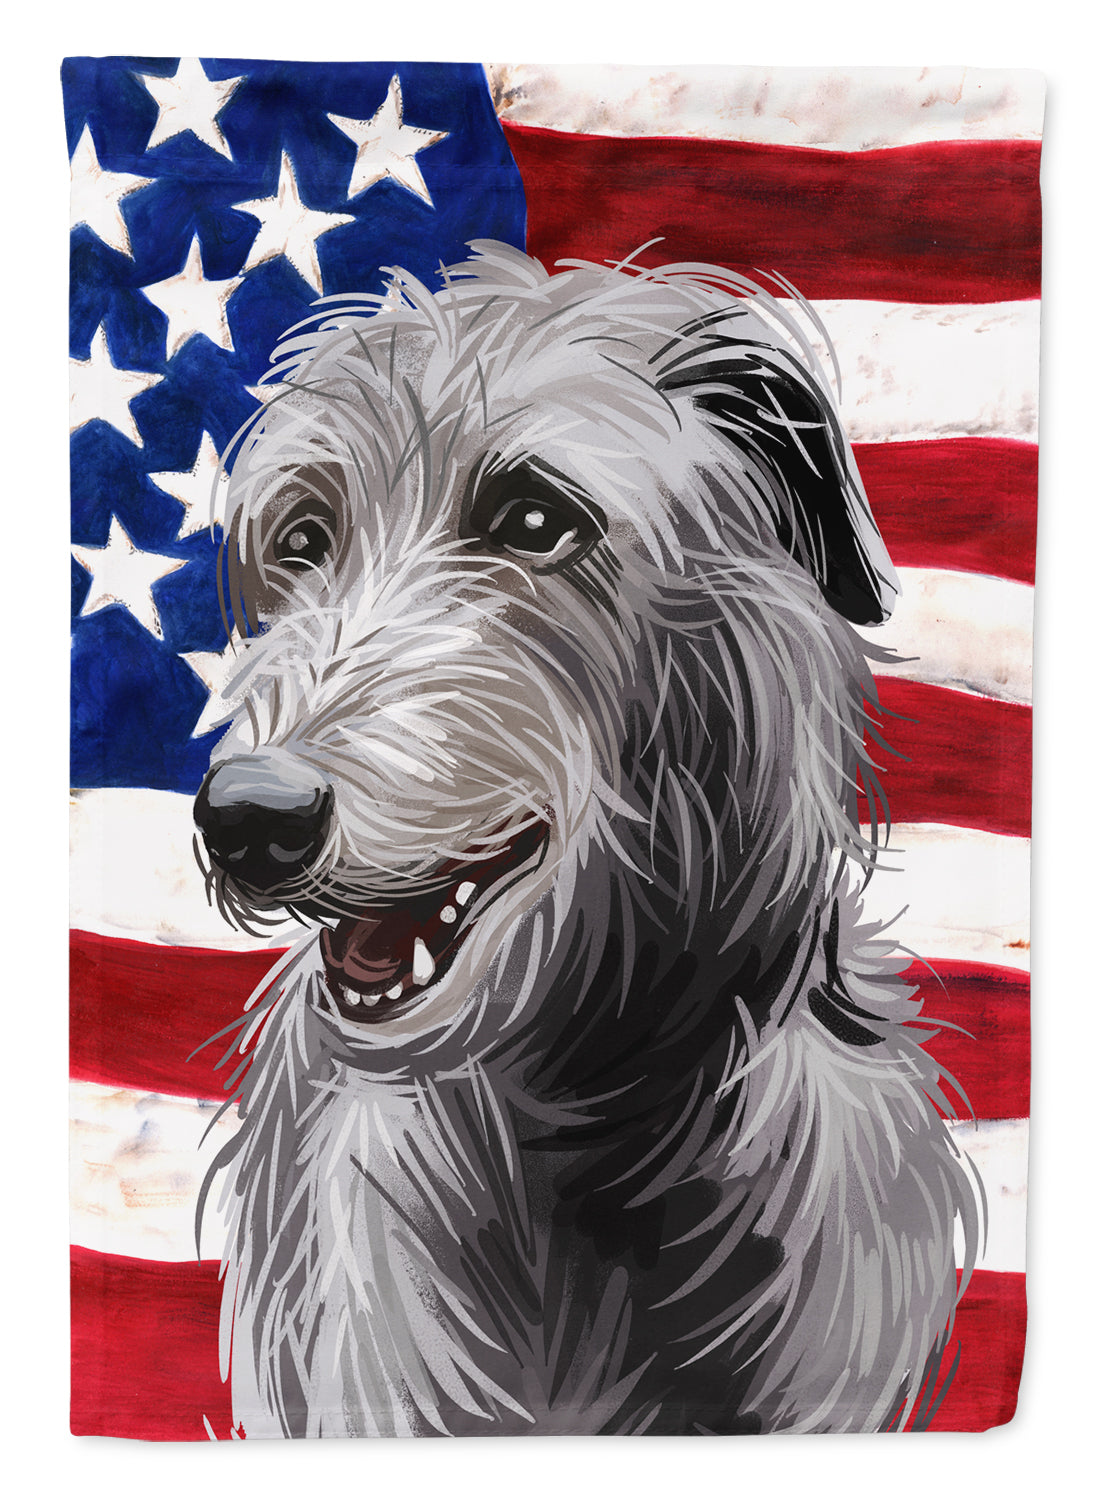 Scottish Deerhound Dog American Flag Flag Garden Size CK6695GF